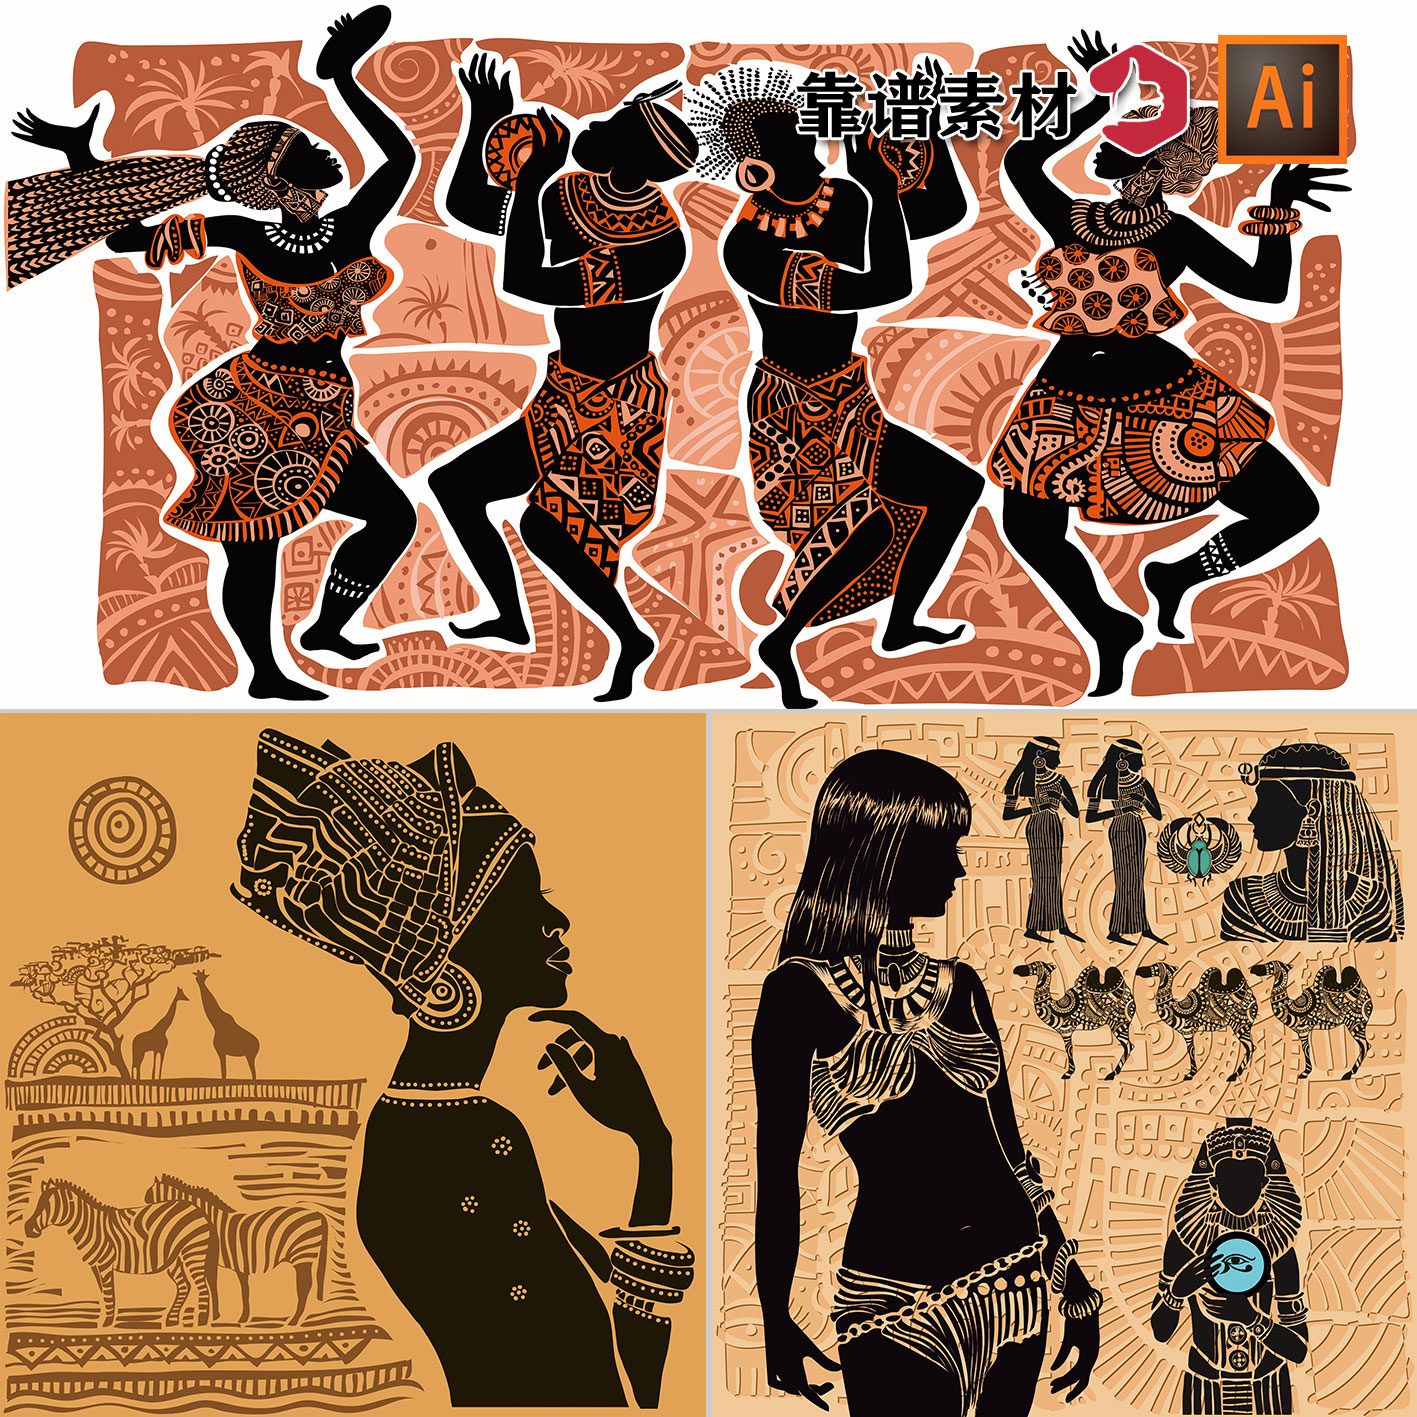 非洲黑人美女人物原住民原始壁画剪影插画装饰画AI矢量设计素材